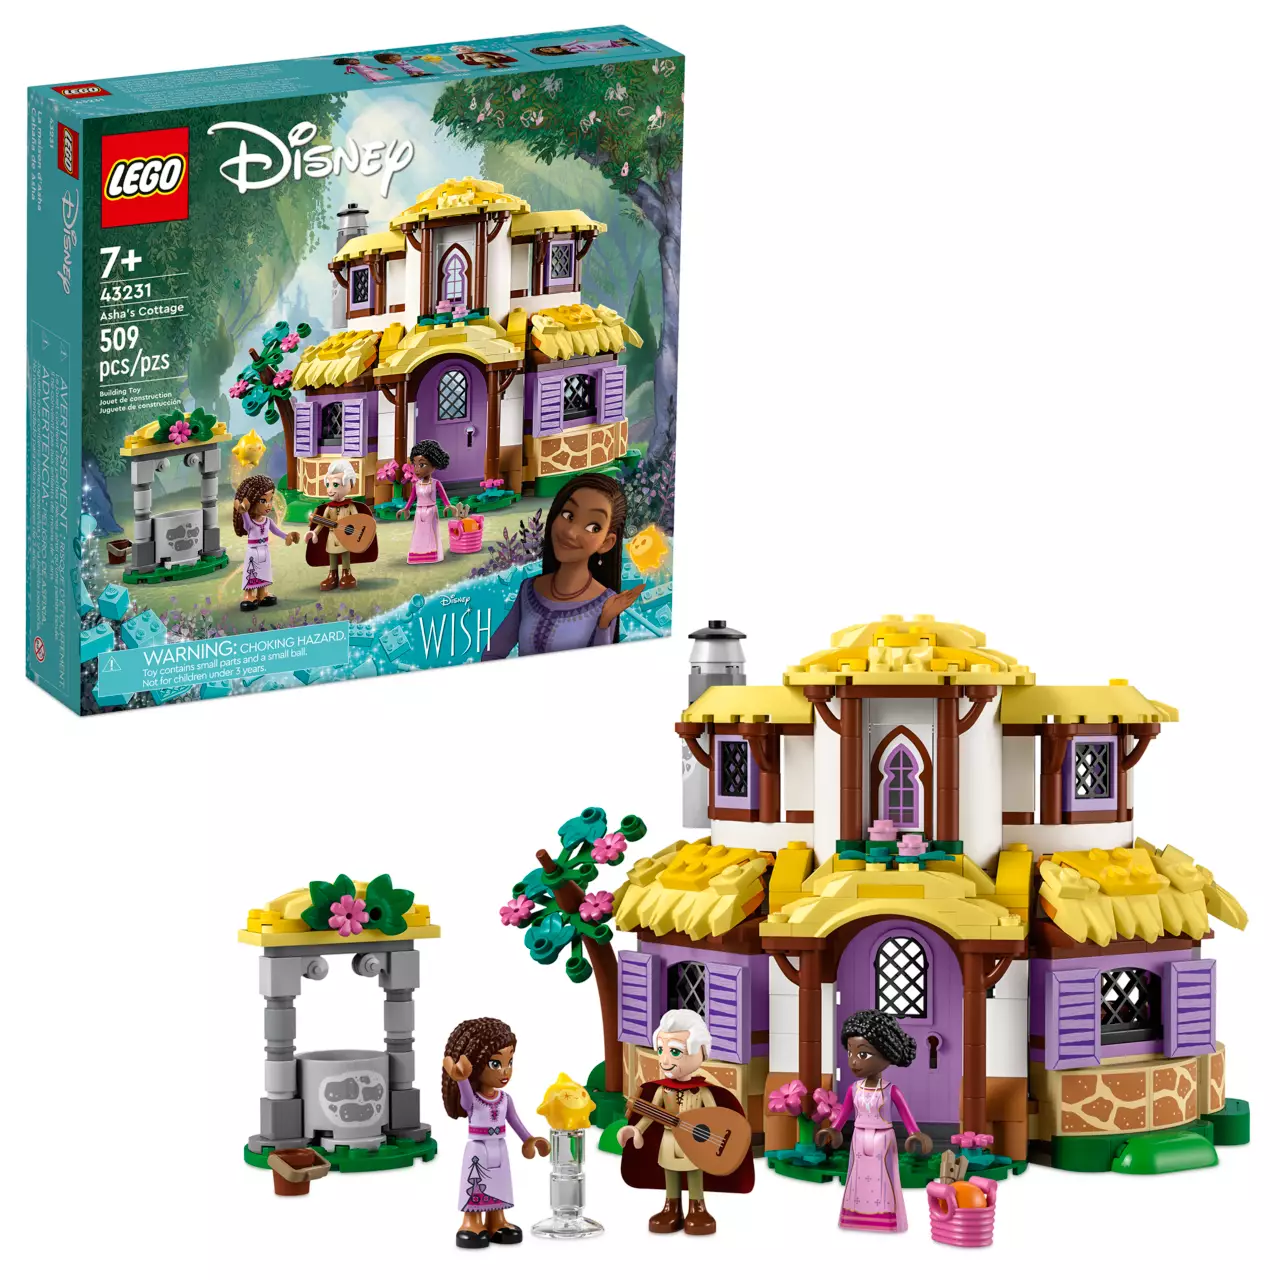 Disney's Wish LEGO Asha's Cottage – 43231